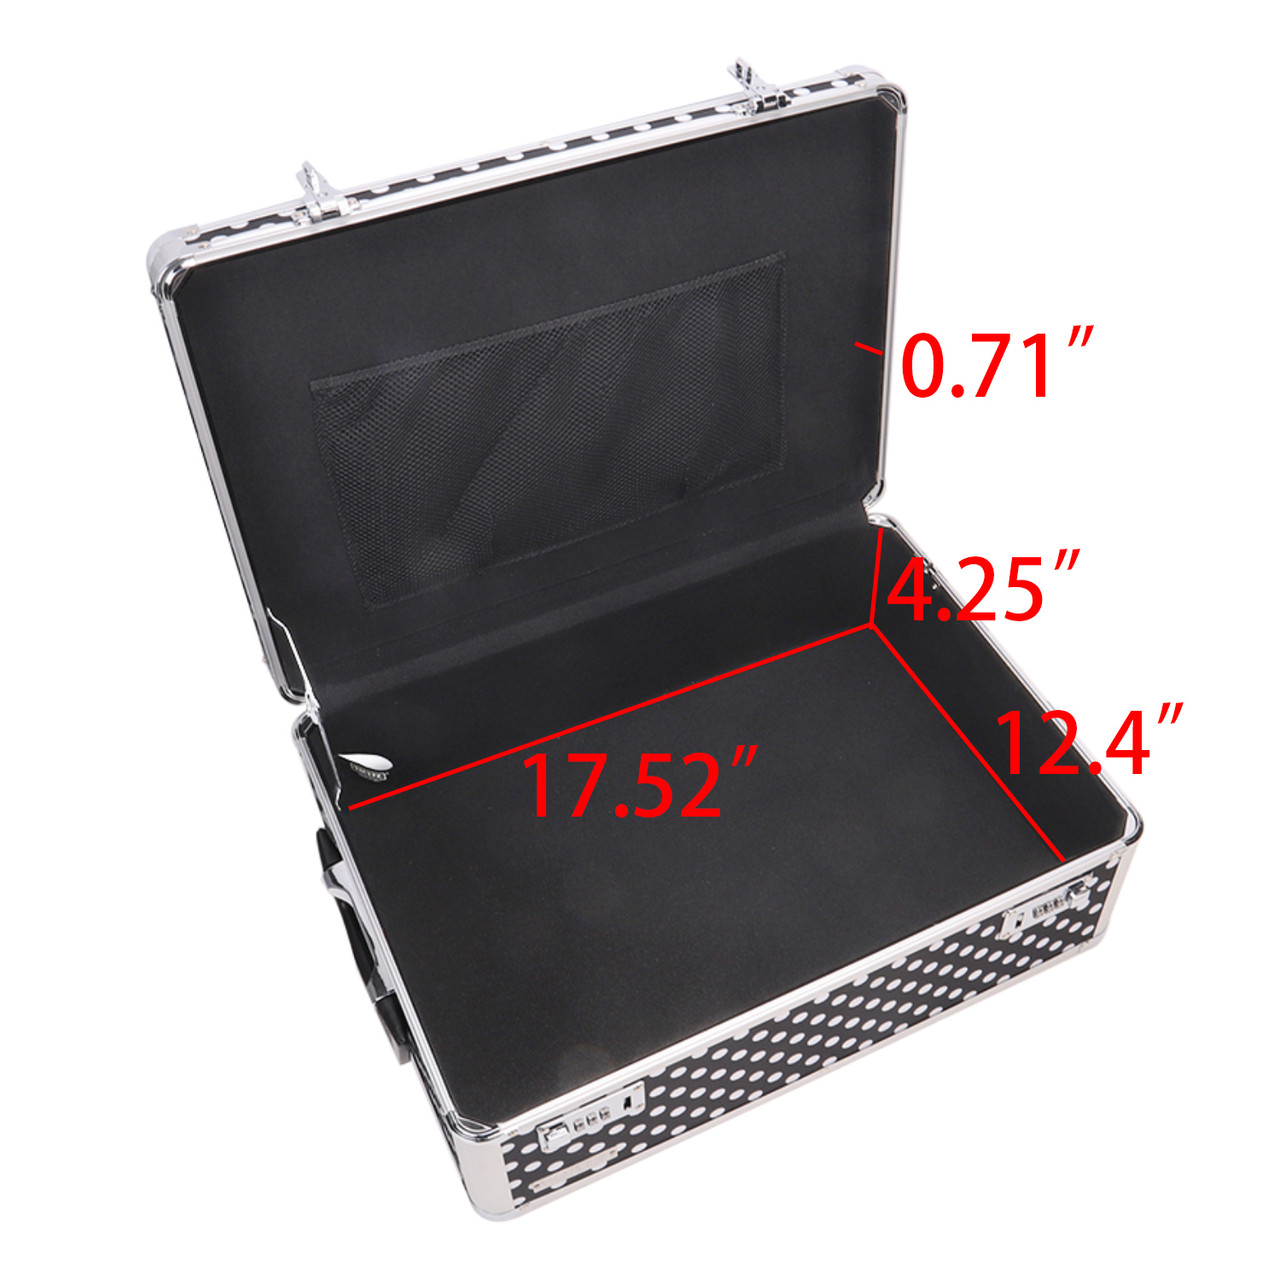 Vaultz Divided Storage Box, Black and White Polka Dot - VZ03893